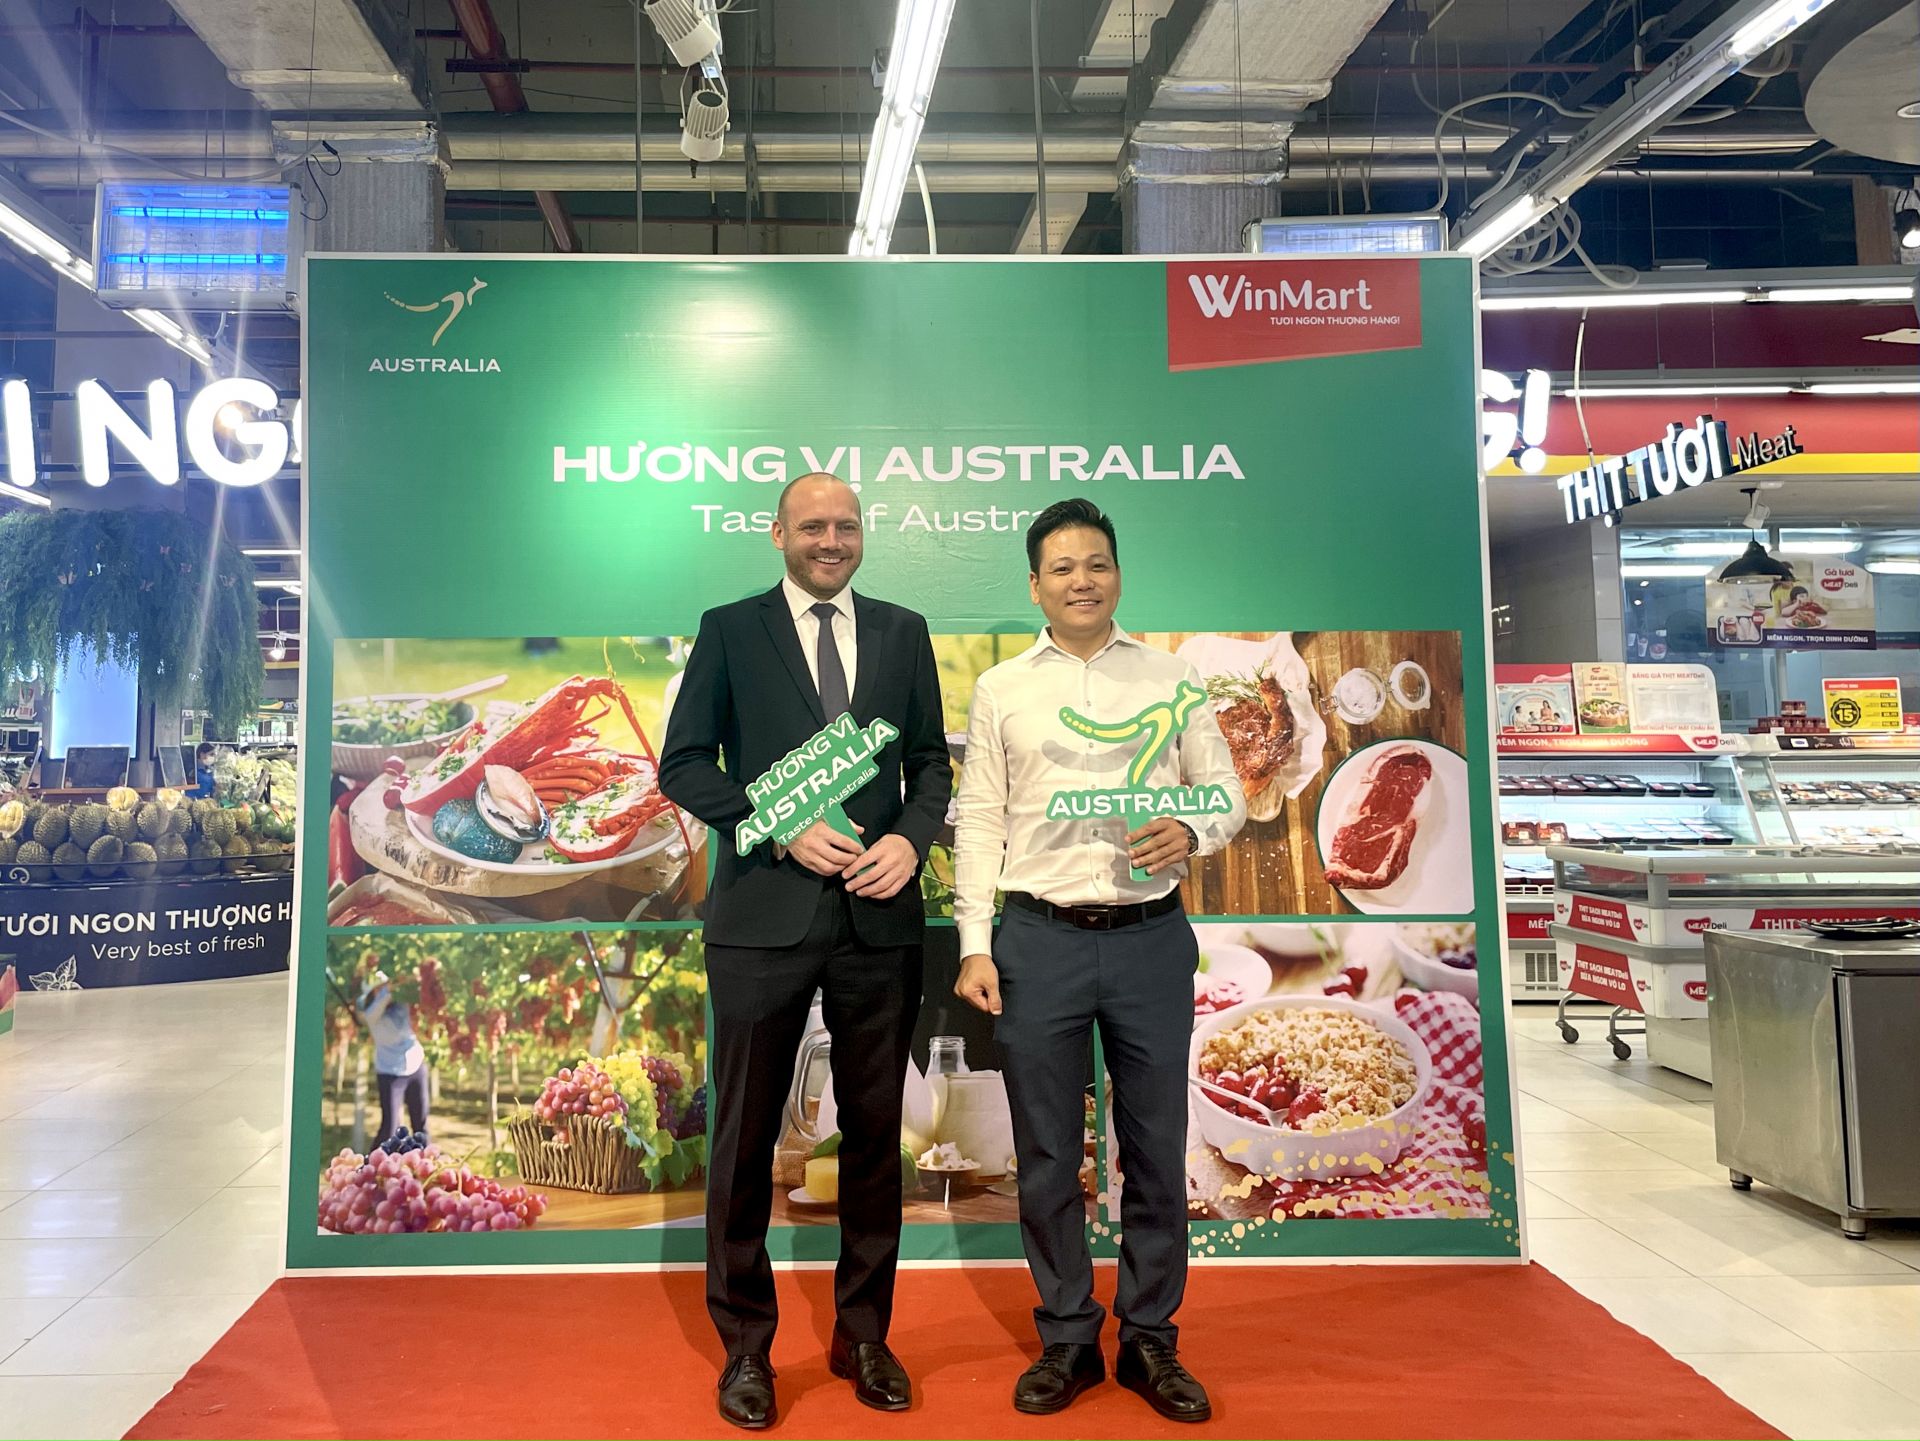 Ông Shannon Leahy - Tham Tán Cơ quan Thương mại và Đầu tư Chính phủ Australia cùng ông Nguyễn Trọng Tuấn - Giám đốc khối WinMart toàn quốc bắt tay khai mạc sự kiện Kick-off Taste of Australia